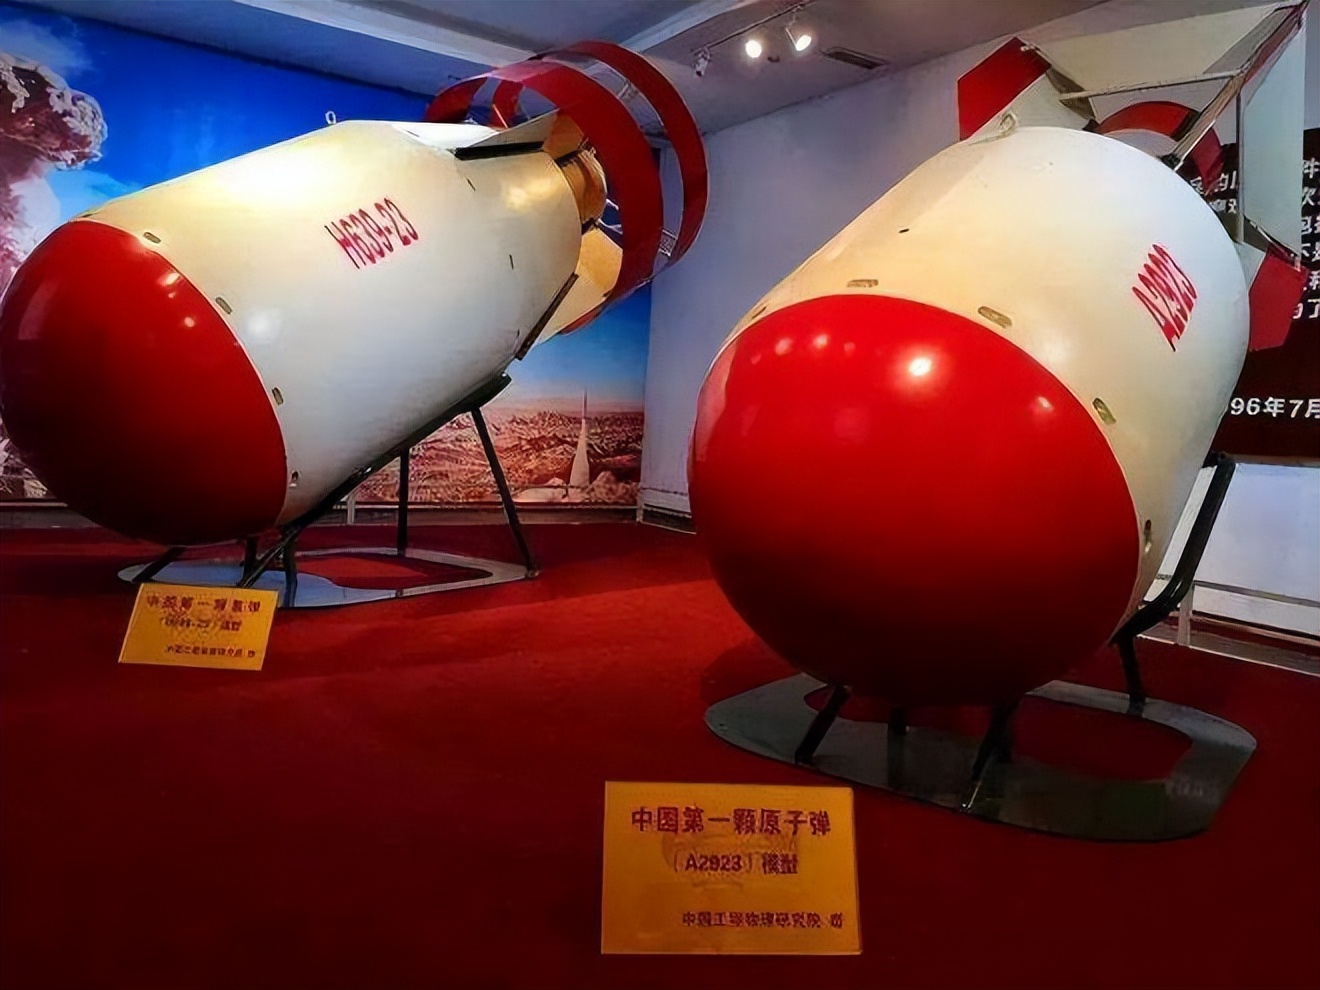 知名大学教授时殷弘,主张中国销毁核武器取信美国,他有何居心?